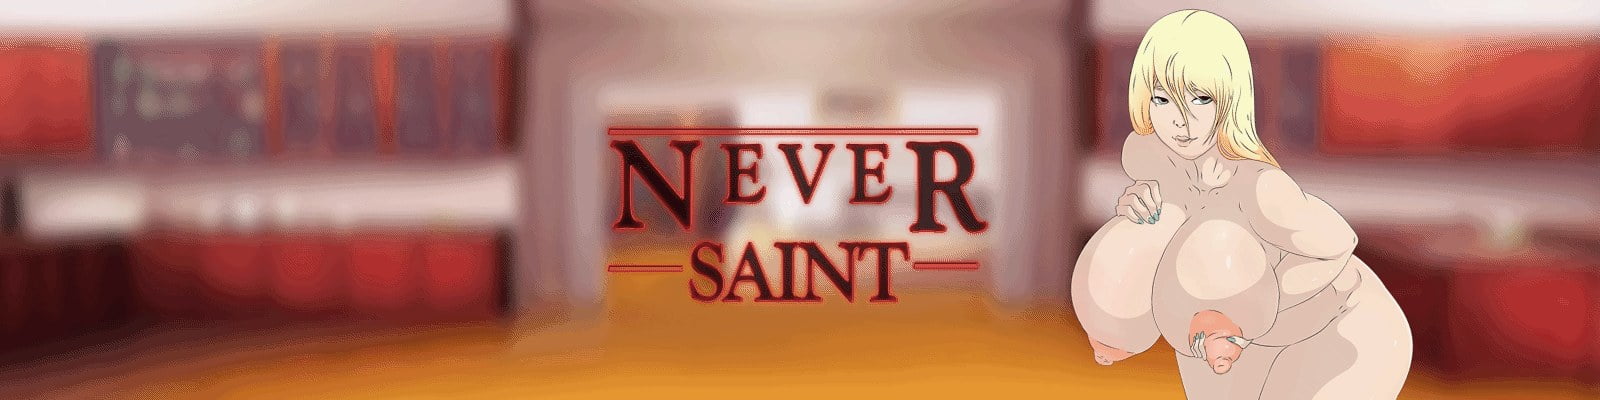 Never Saint [Saint Voice] Adult xxx Game Download